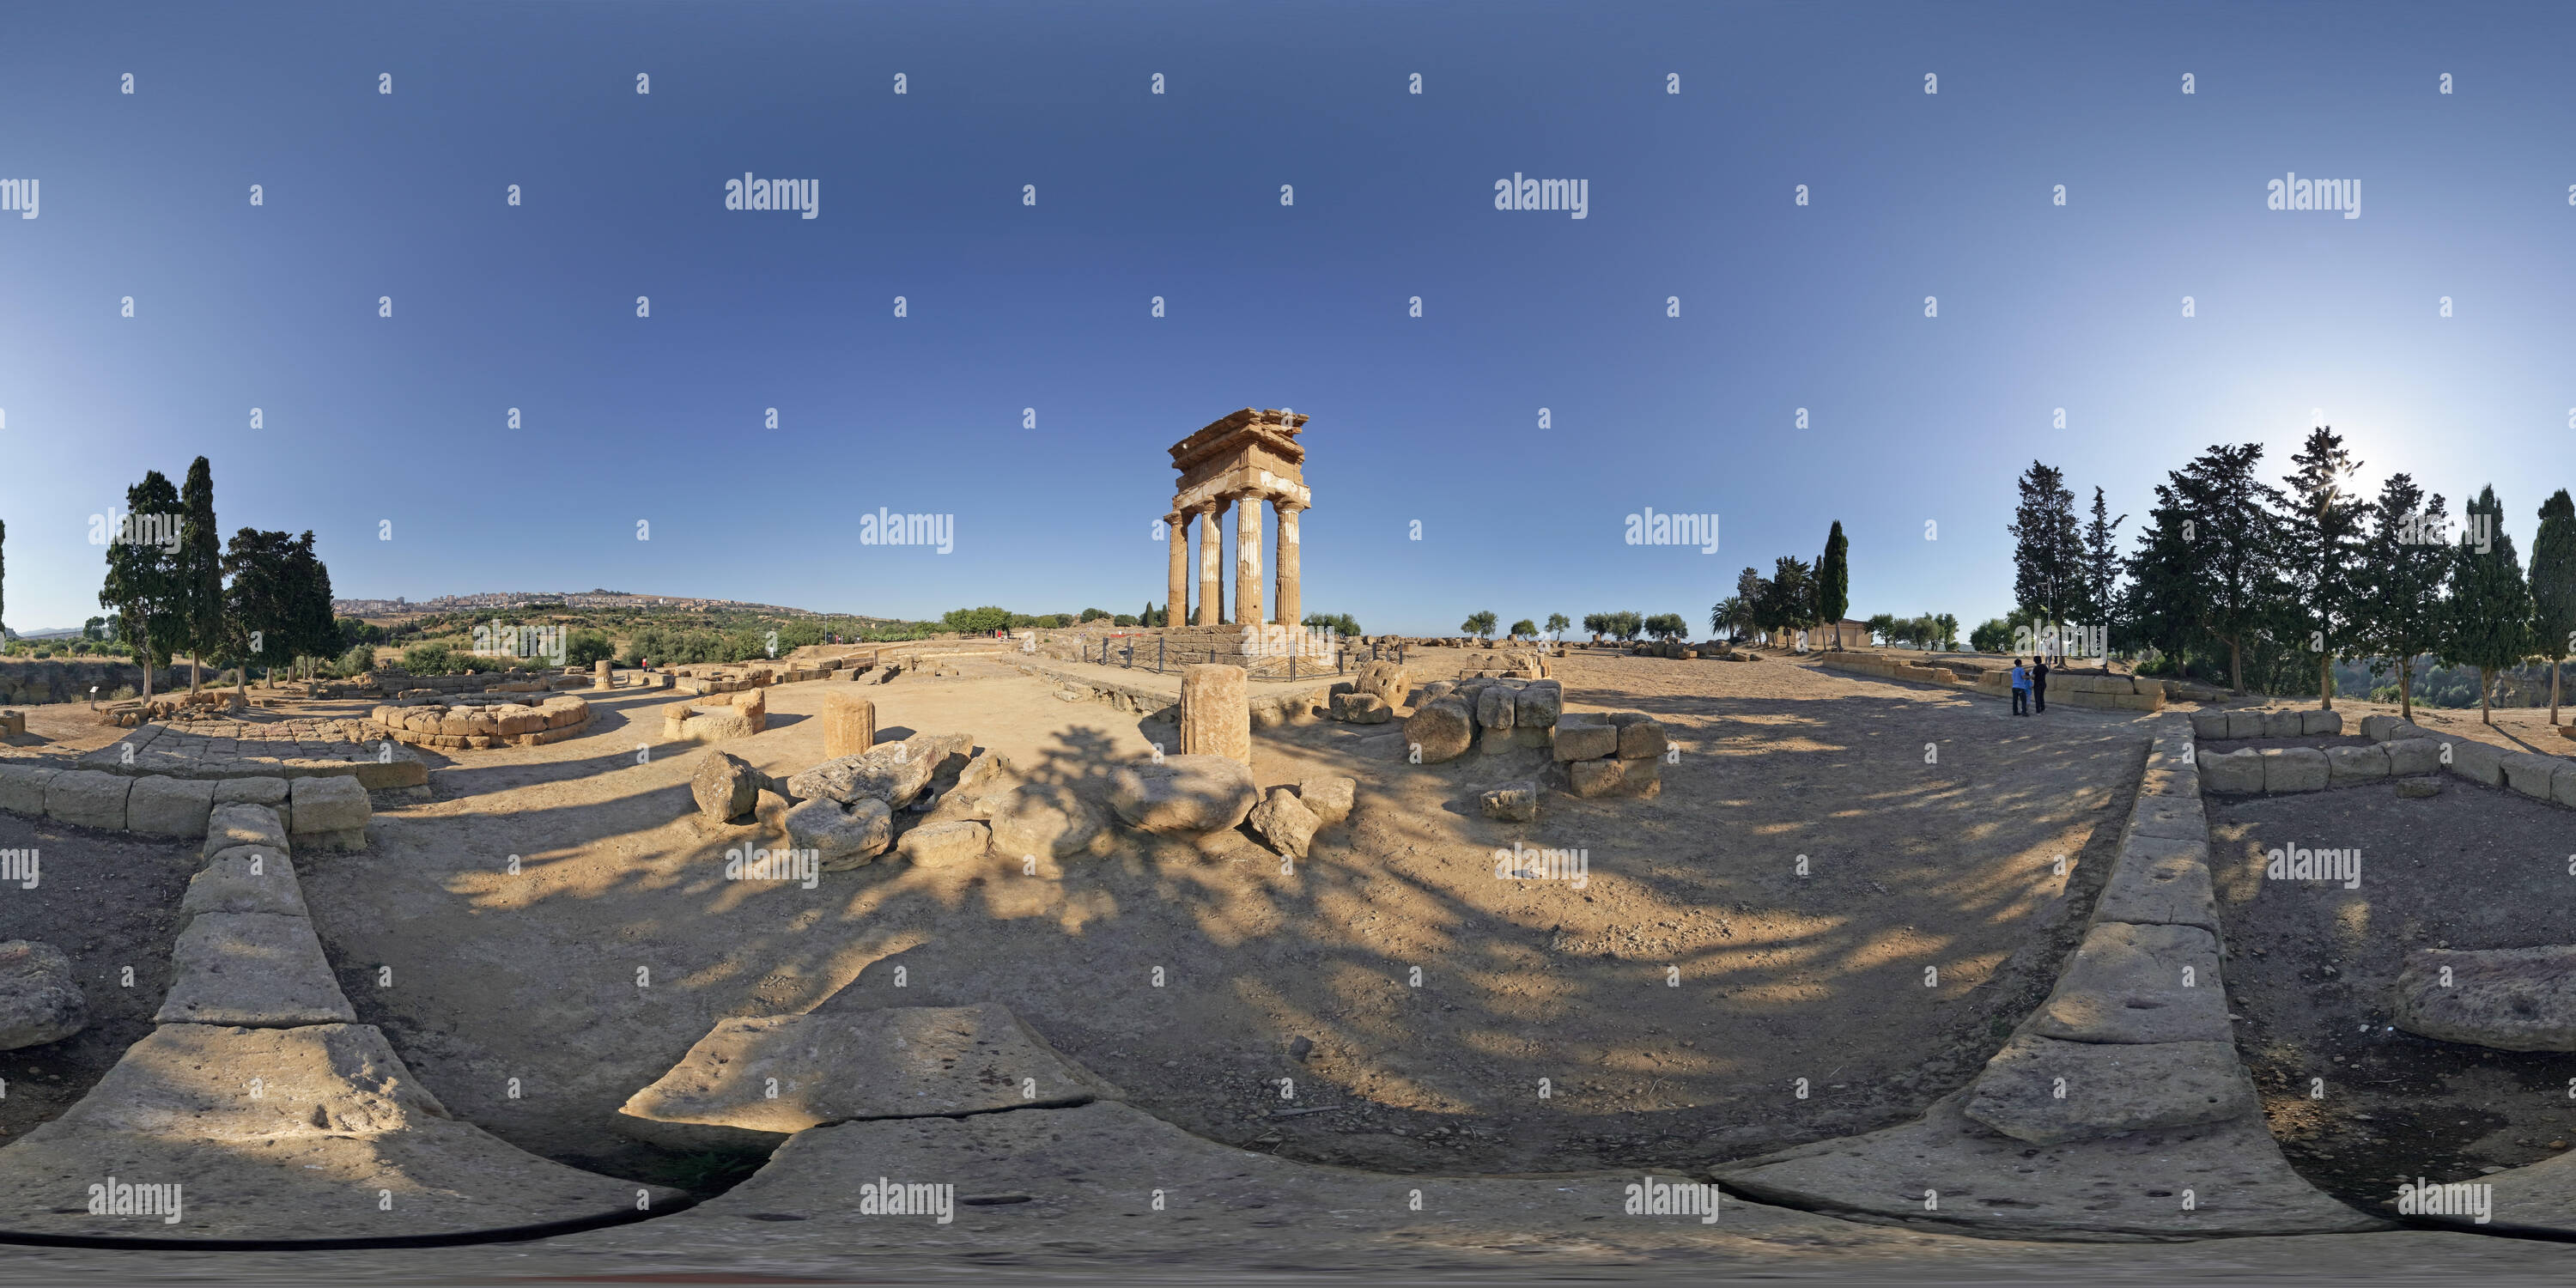 360 Grad Panorama Ansicht von Panorama der Tempel der Dioskuren auf das Tal der Tempel, Agrigento, Sizilien, Italien, am späten Nachmittag Licht, 360 x 180 Grad equirectangular